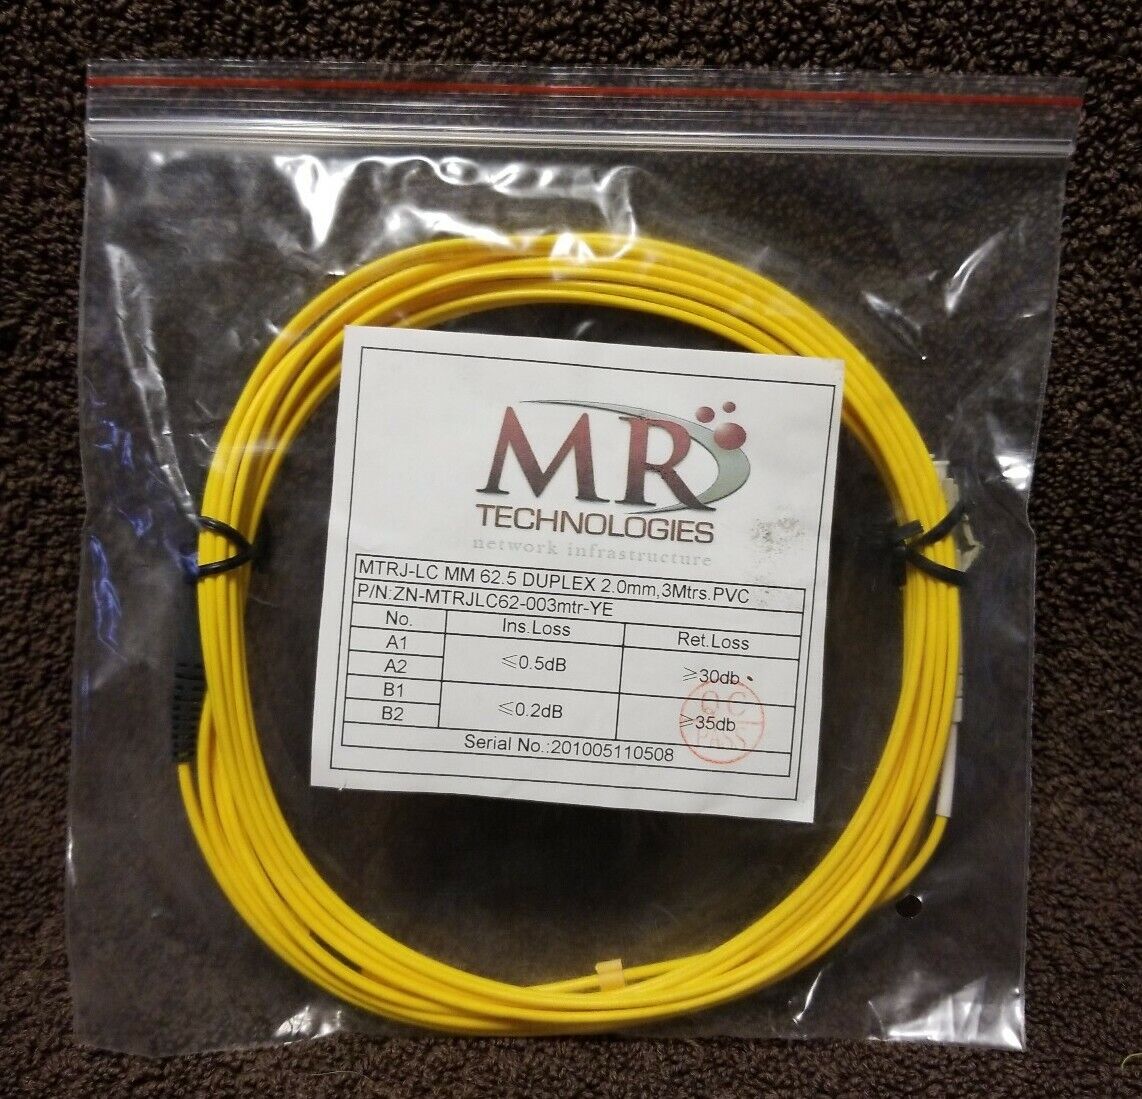 Fiber Optic MTRJ-LC MM 62.5 DUPLEX 2.0mm, 3Mtrs.PVC P/N: ZN-MTRJLC62-003mtr-YE 